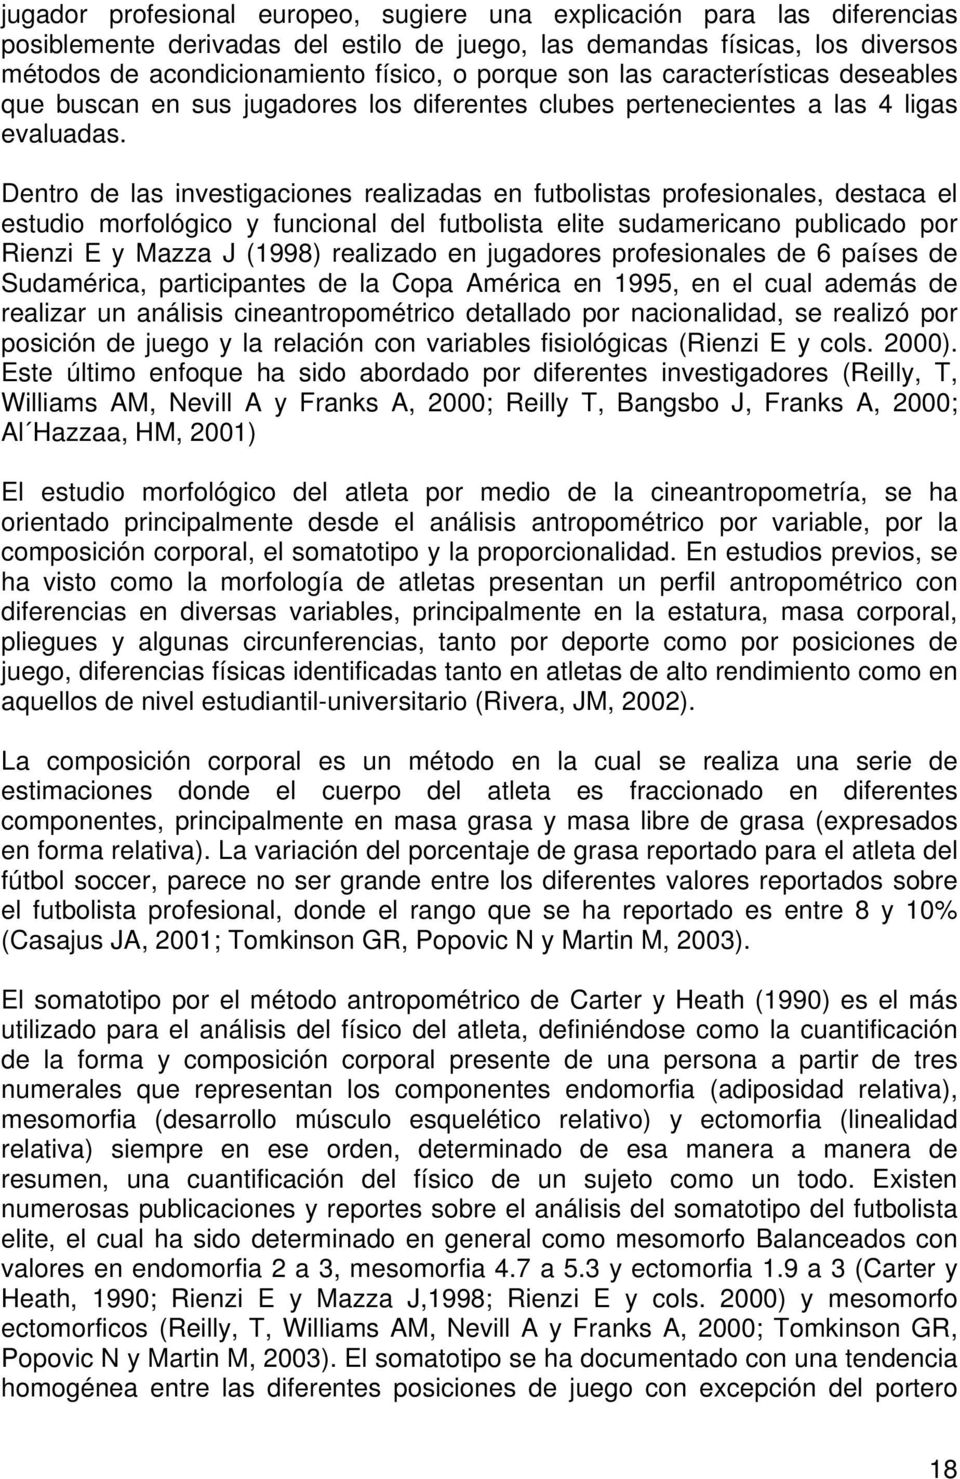 Dentro de las investigaciones realizadas en futbolistas profesionales, destaca el estudio morfológico y funcional del futbolista elite sudamericano publicado por Rienzi E y Mazza J (1998) realizado